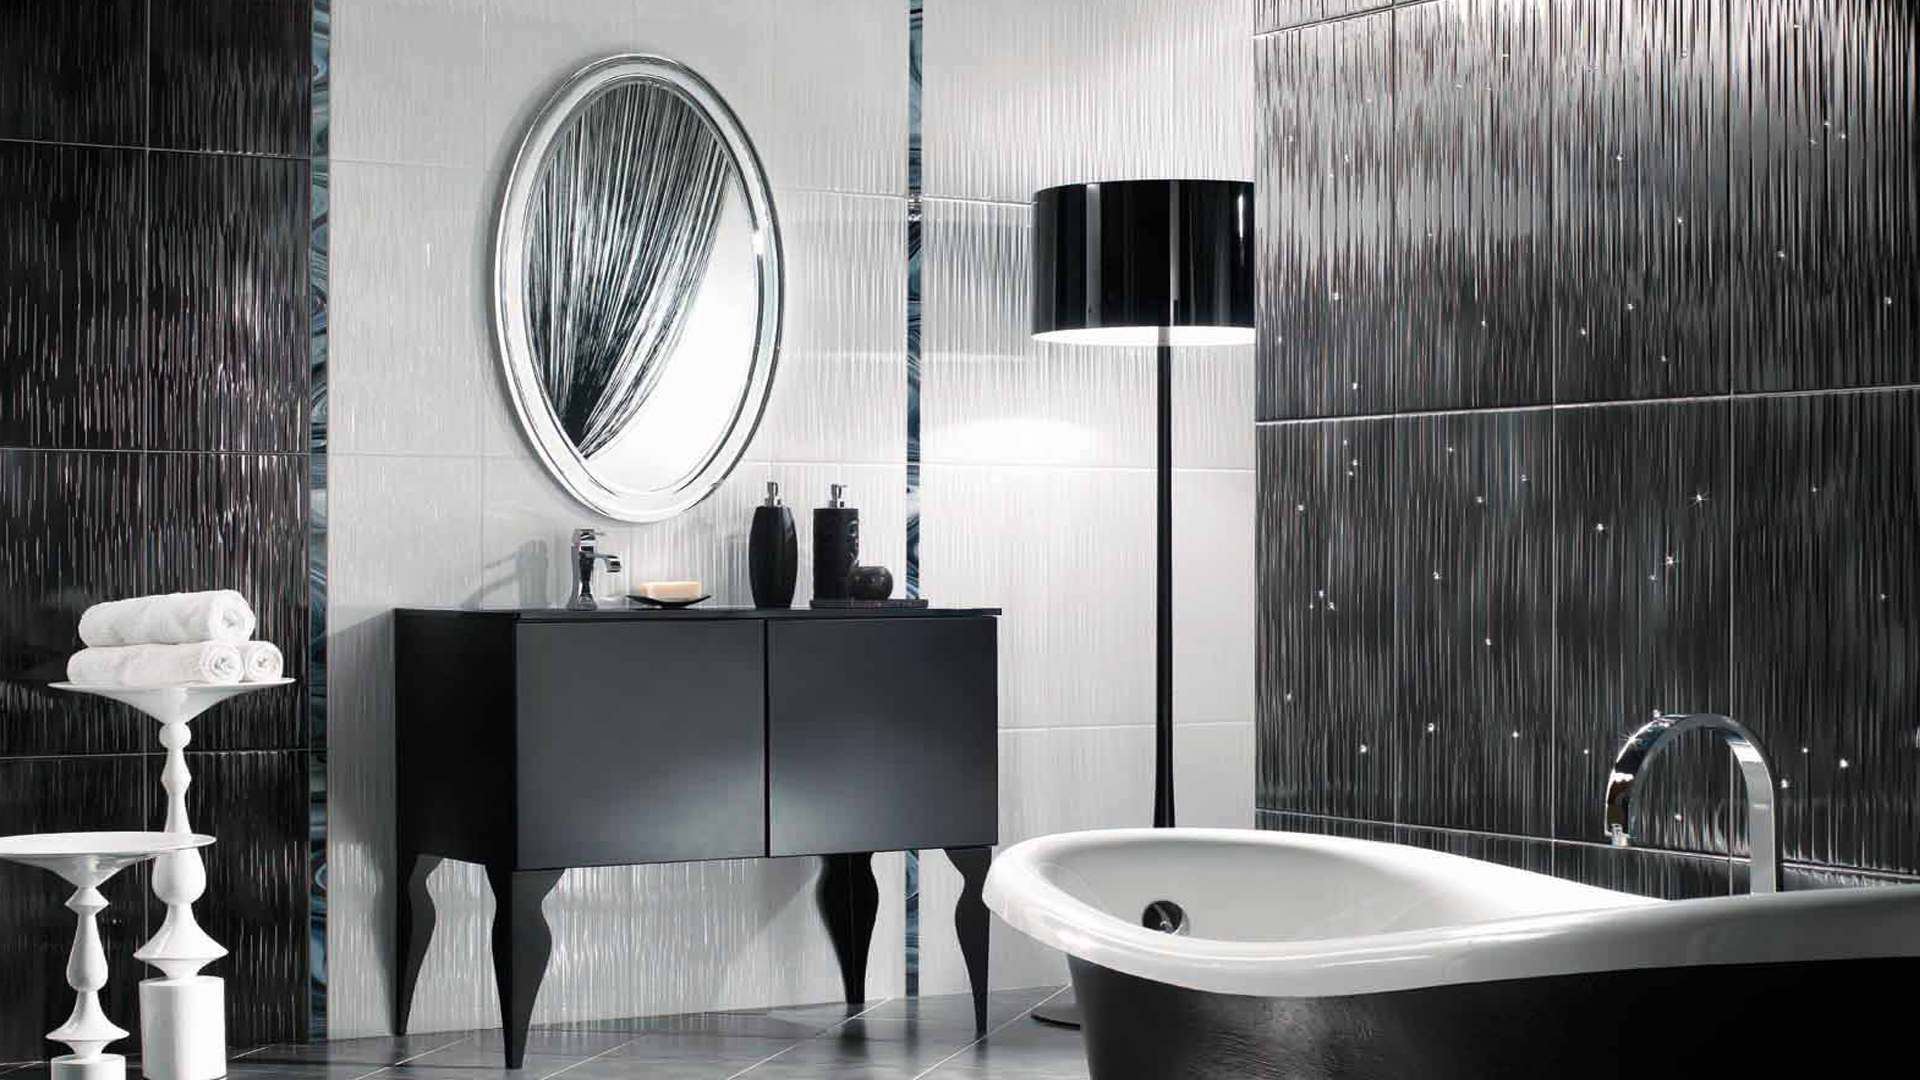 Phòng tắm màu đen và trắng với thiết kế thời trang.